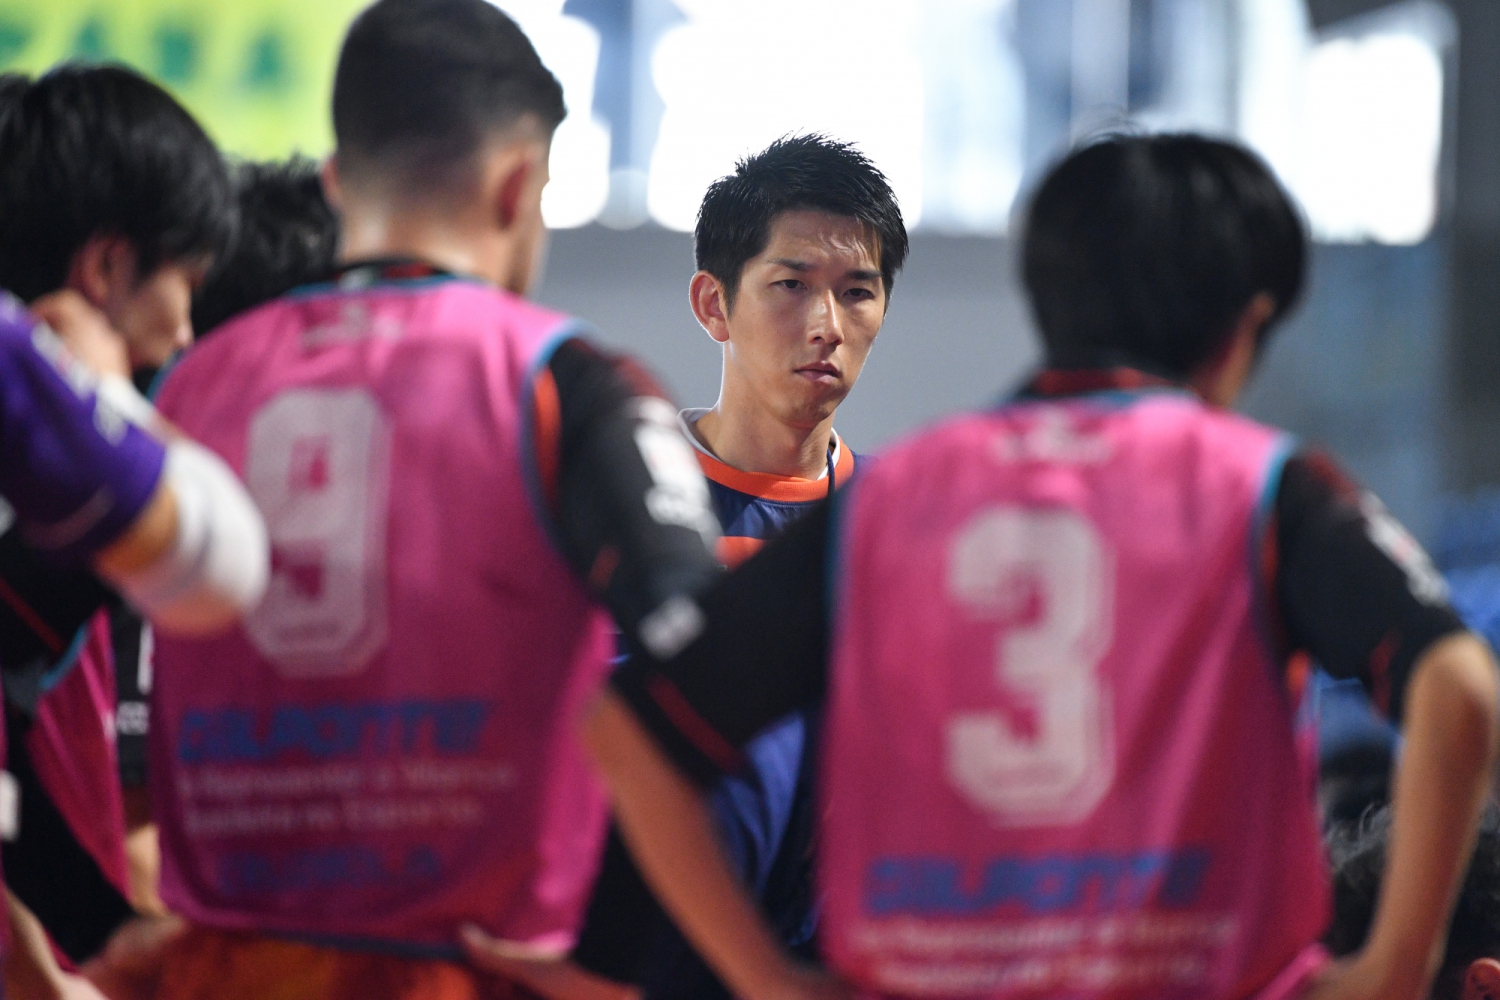 シュライカー大阪が今季コーチに就任した佐藤亮の退任を発表 ここで学び得たものを今後の人生に活かしていきたい Smart Sports News